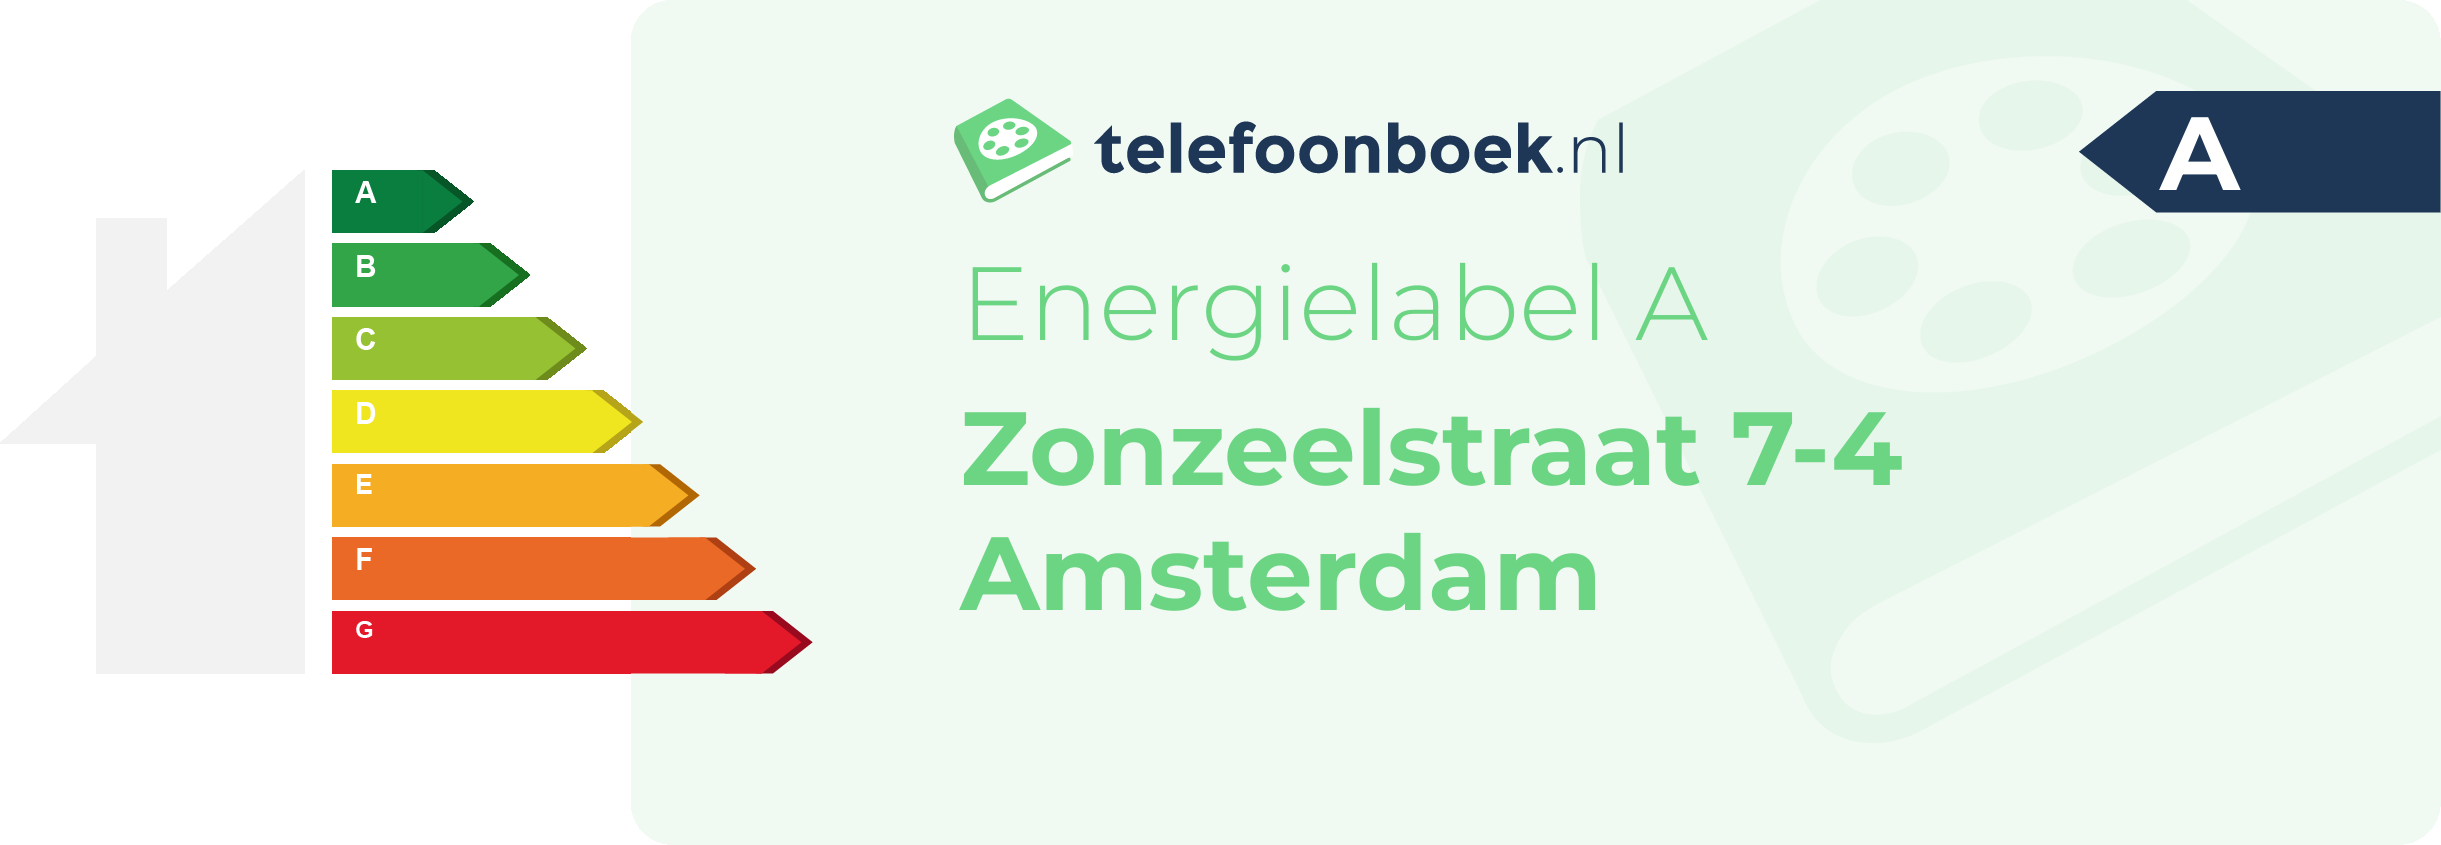 Energielabel Zonzeelstraat 7-4 Amsterdam